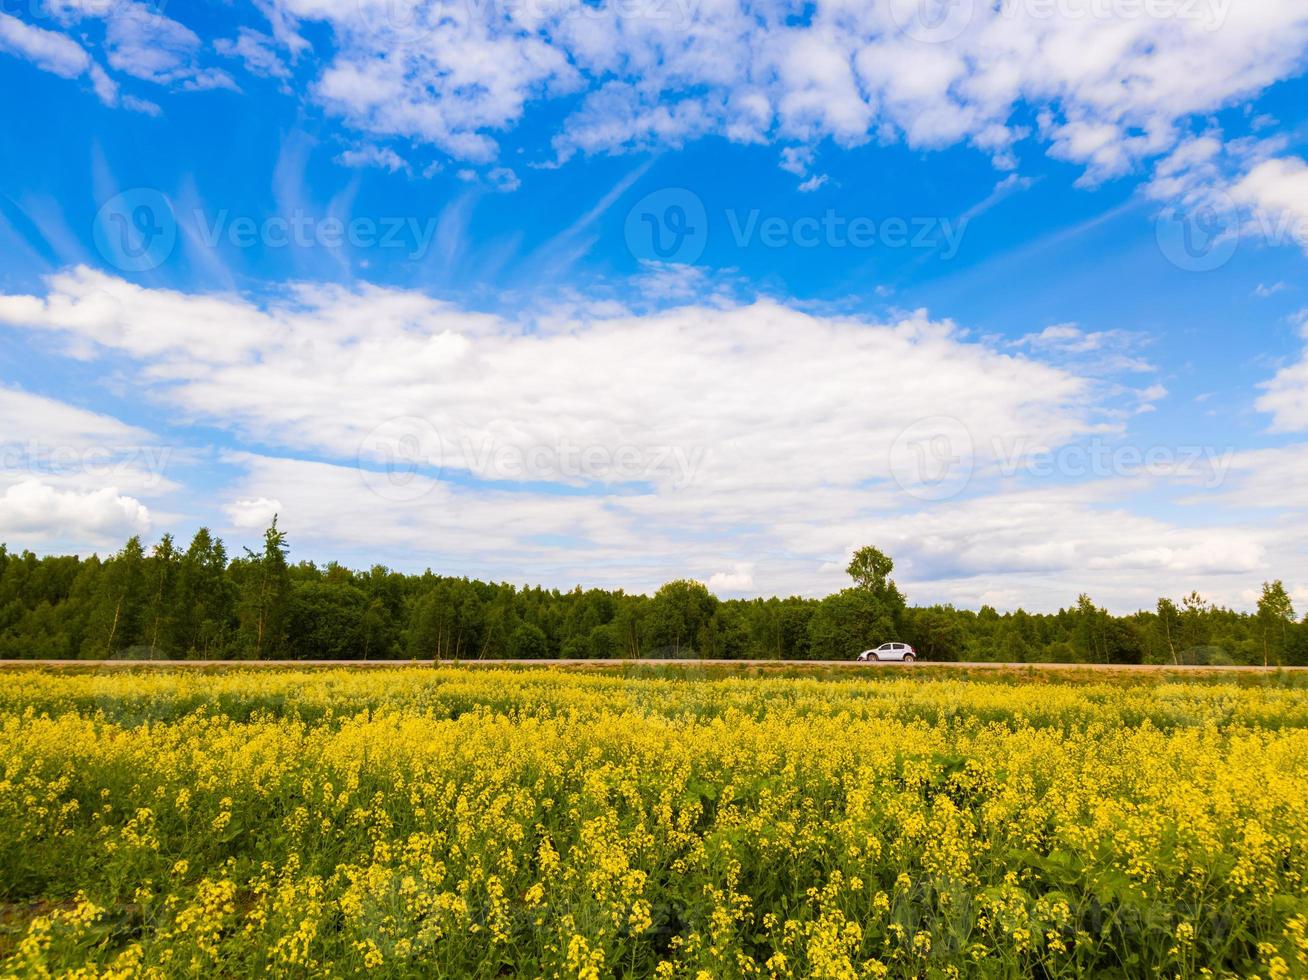 blomning raps fält och blu himmel med vit moln foto